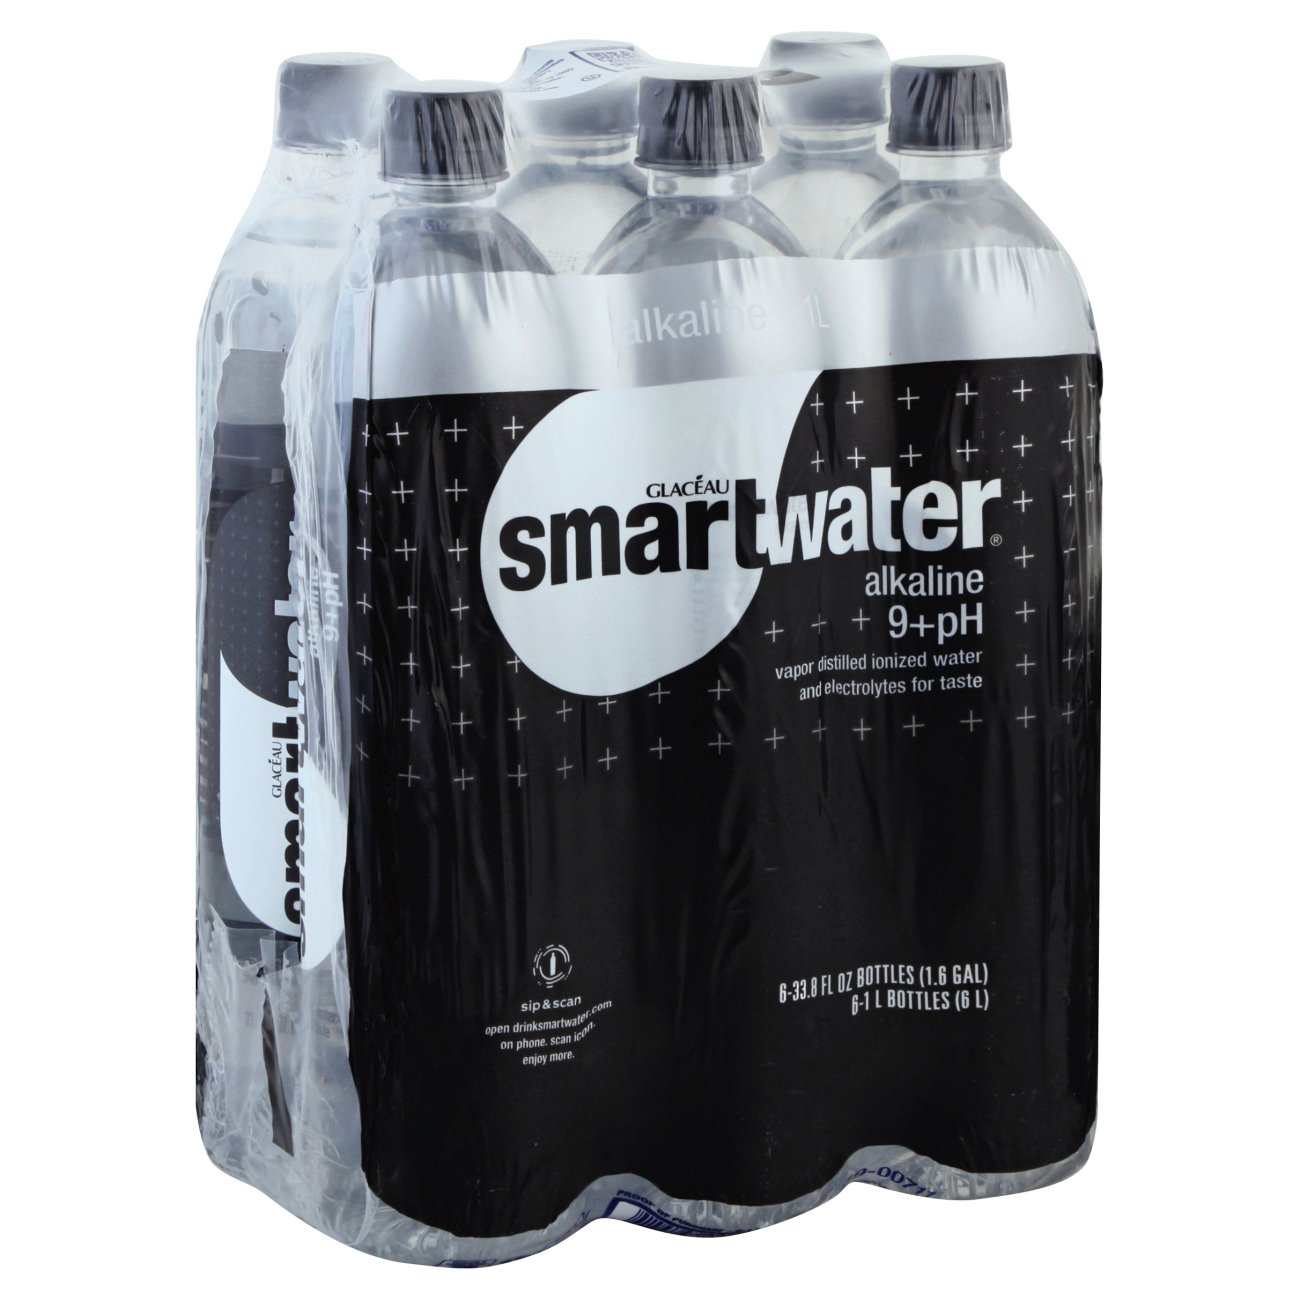 Smart Water Alkaline Benefits